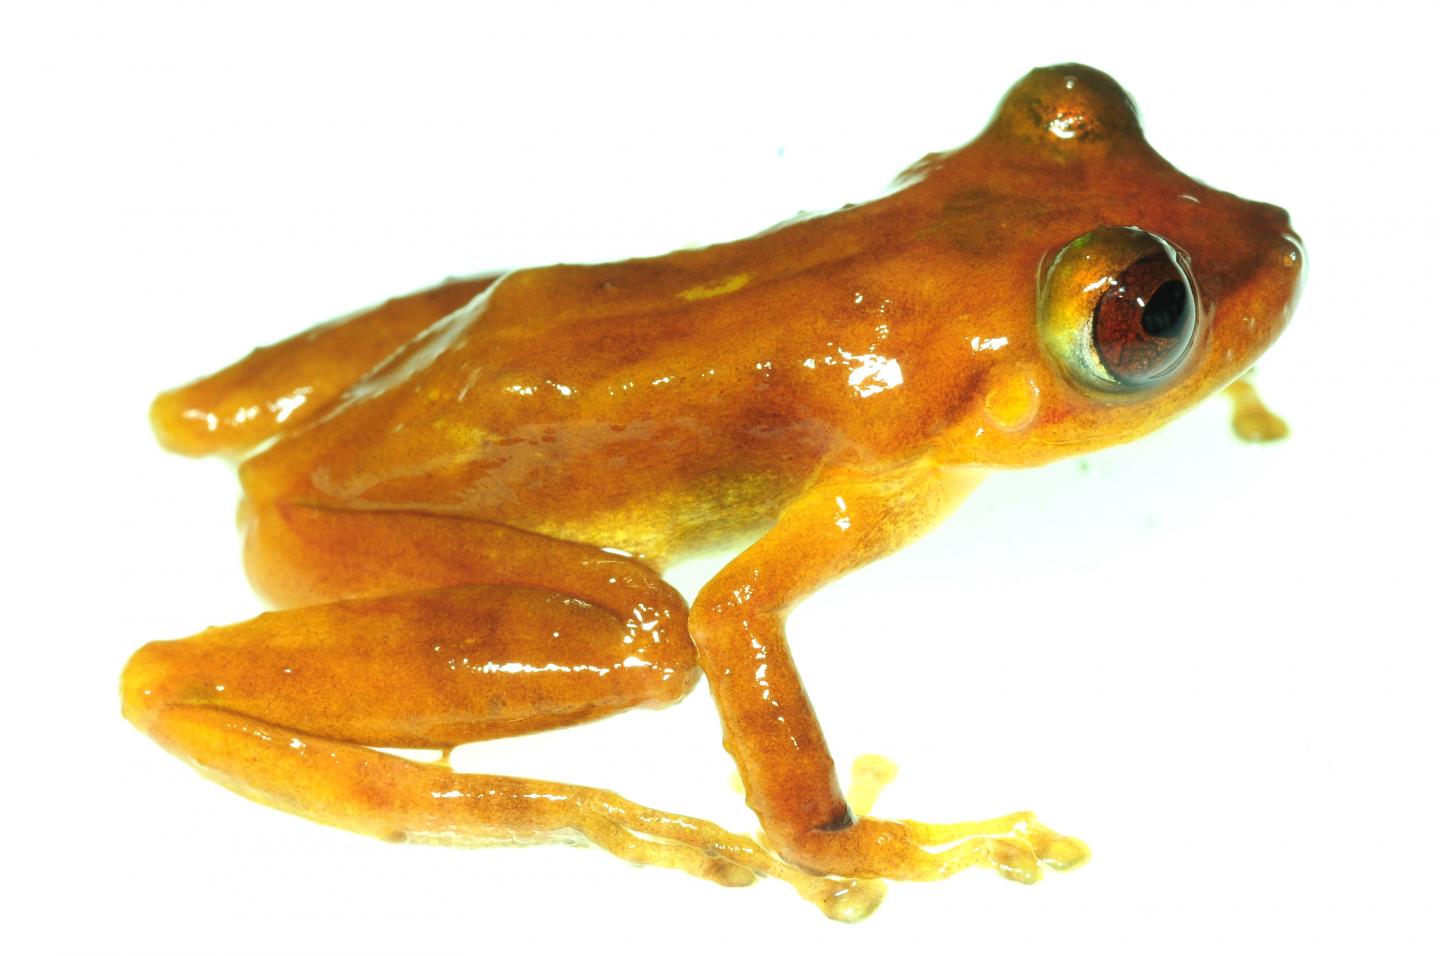 New Rain frog Species P. Pluvialis